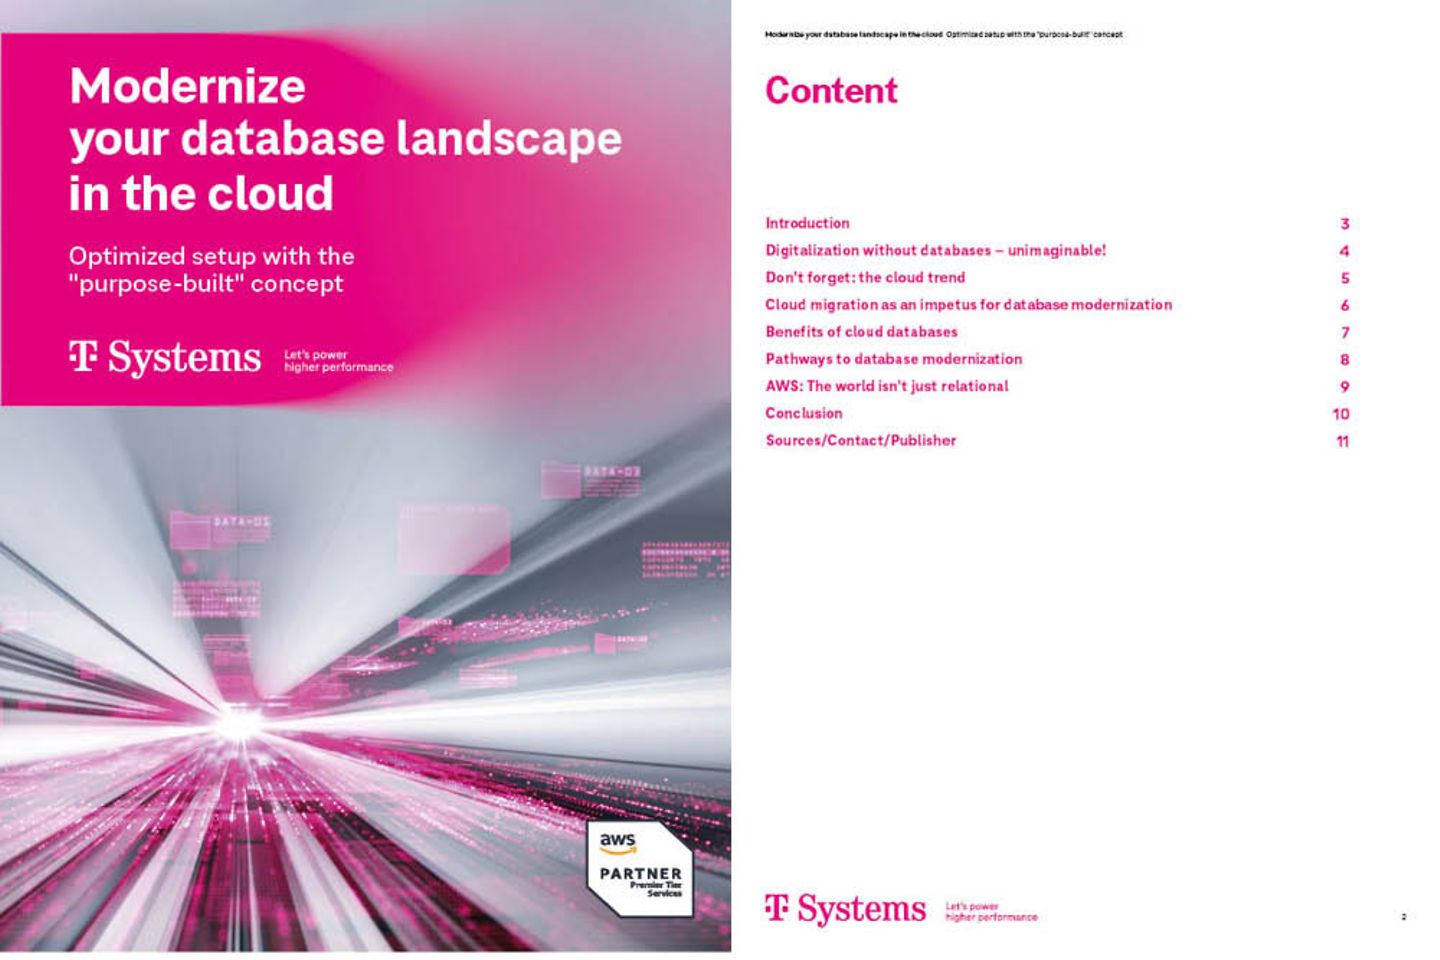 Omslag en de volgende pagina van de whitepaper als screenshot: Moderniseer jouw databaselandschap in de cloud